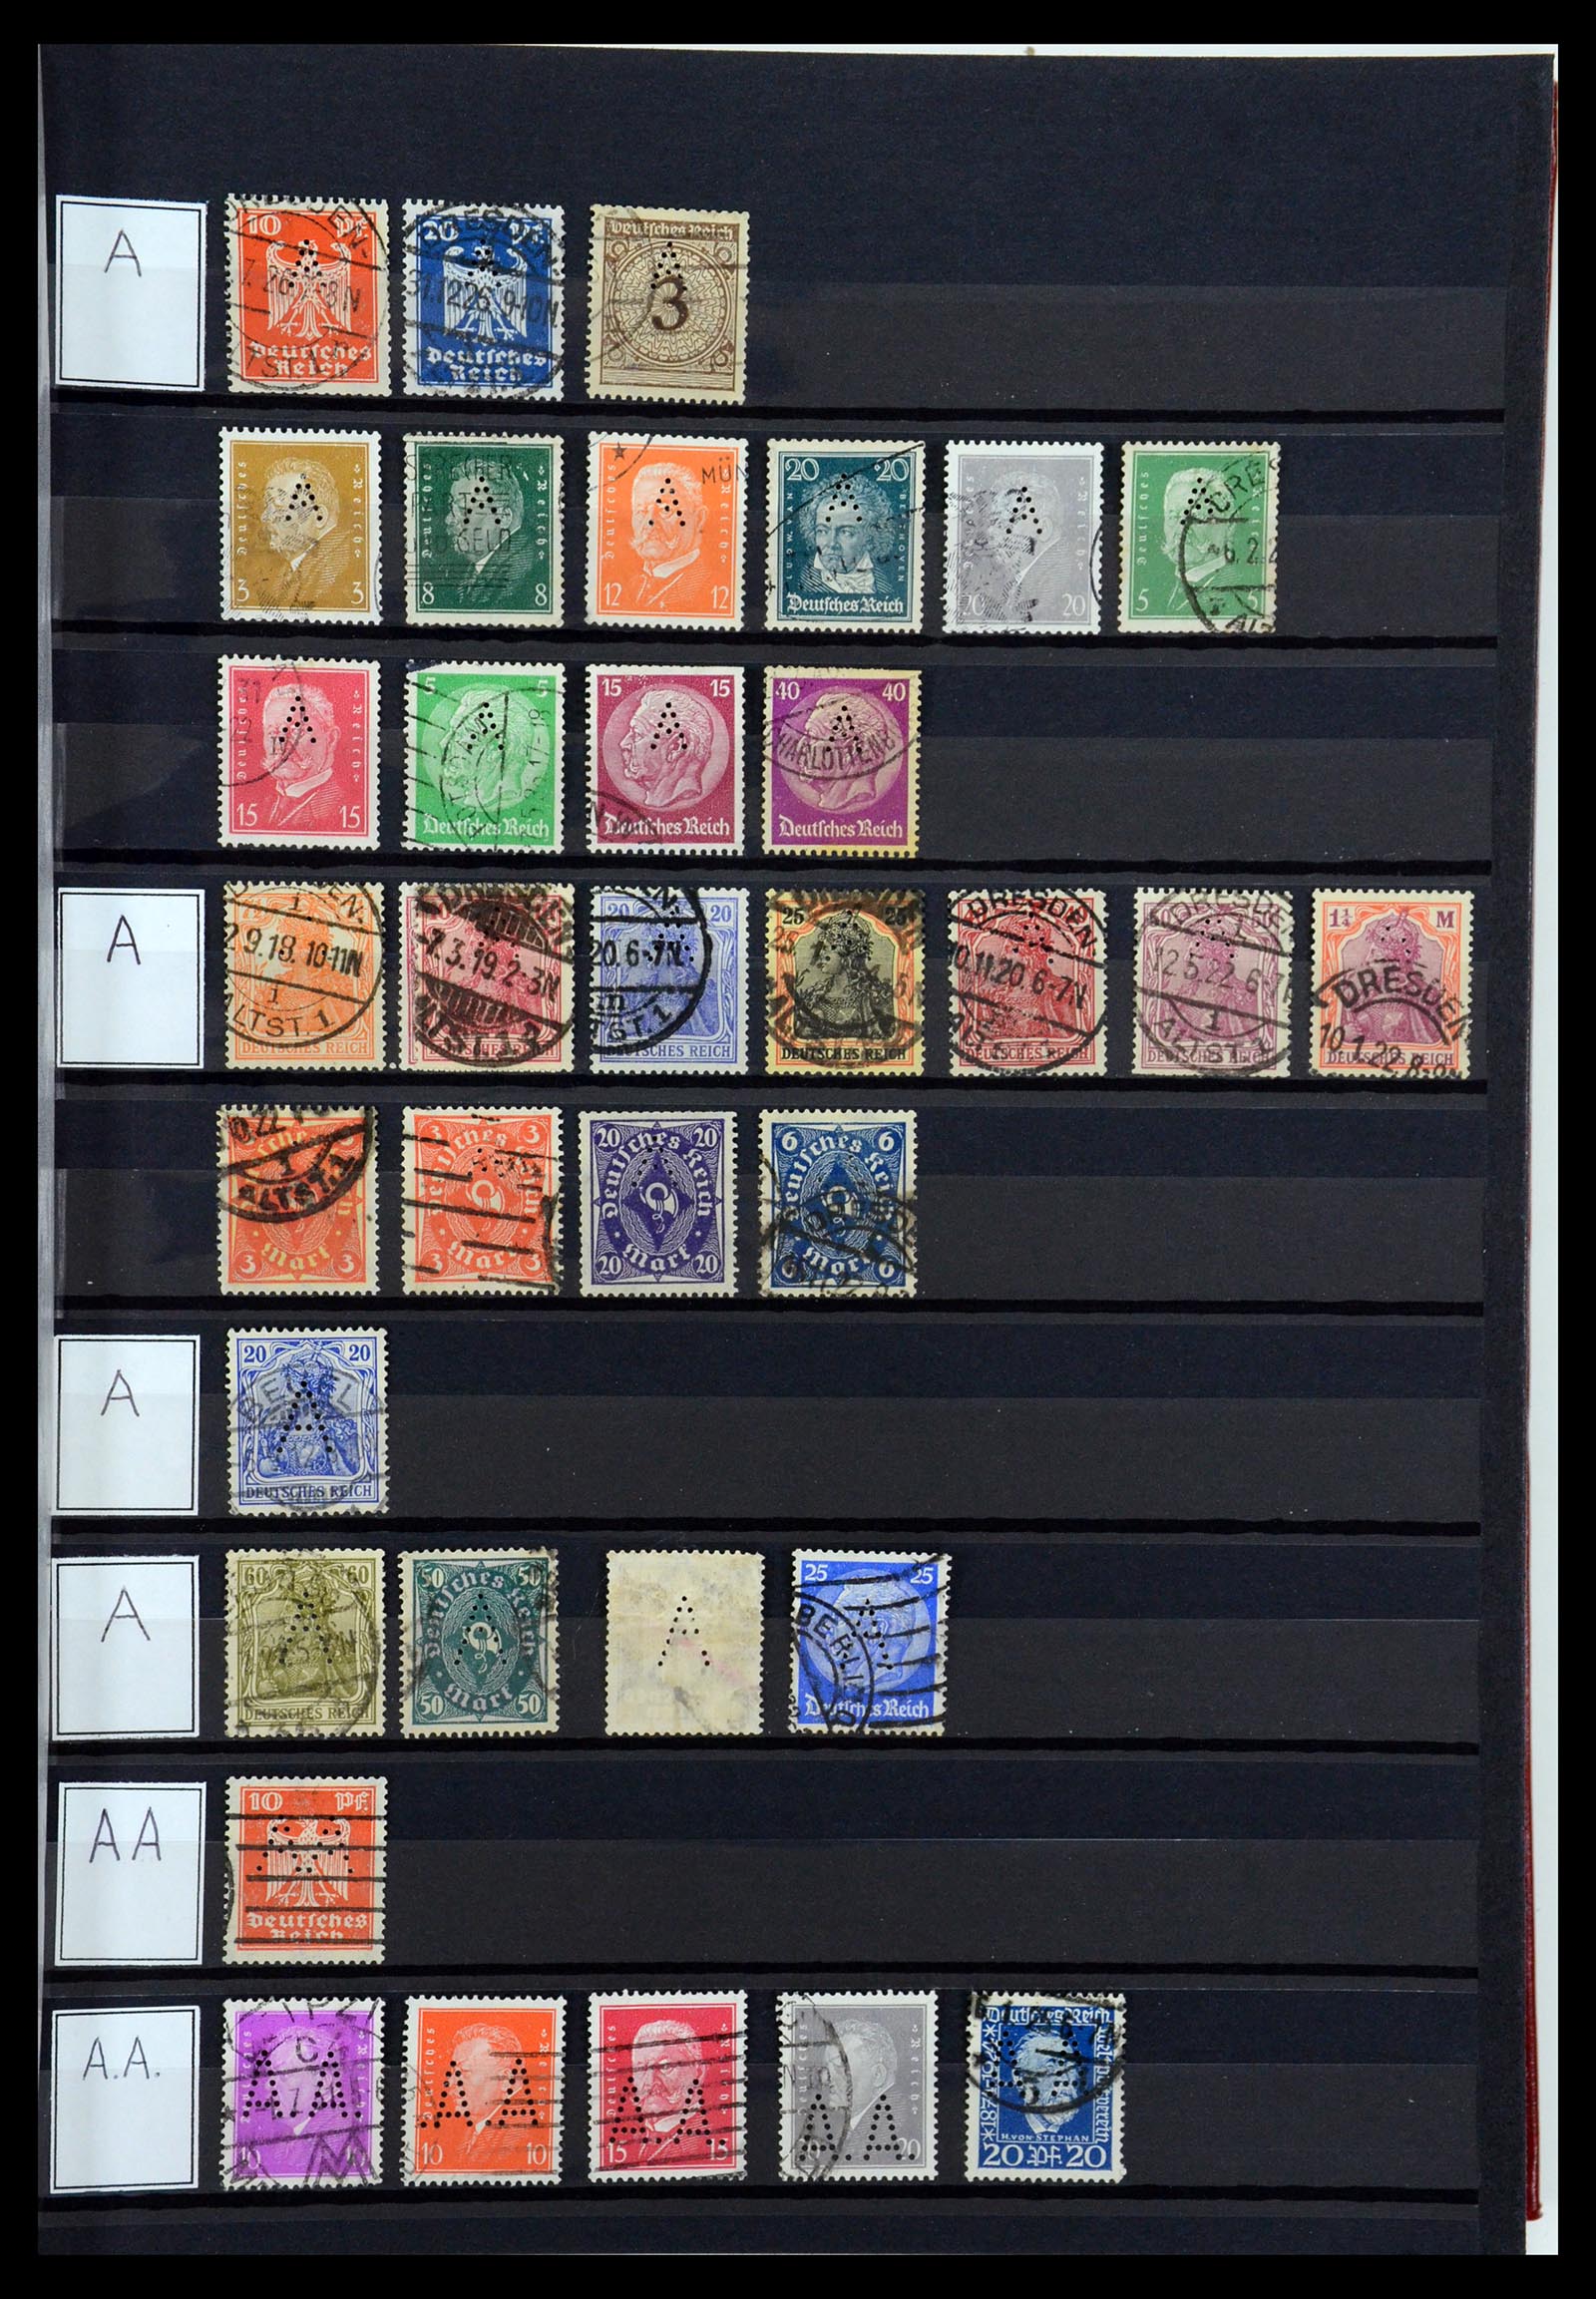 36405 001 - Stamp collection 36405 German Reich perfins 1880-1945.